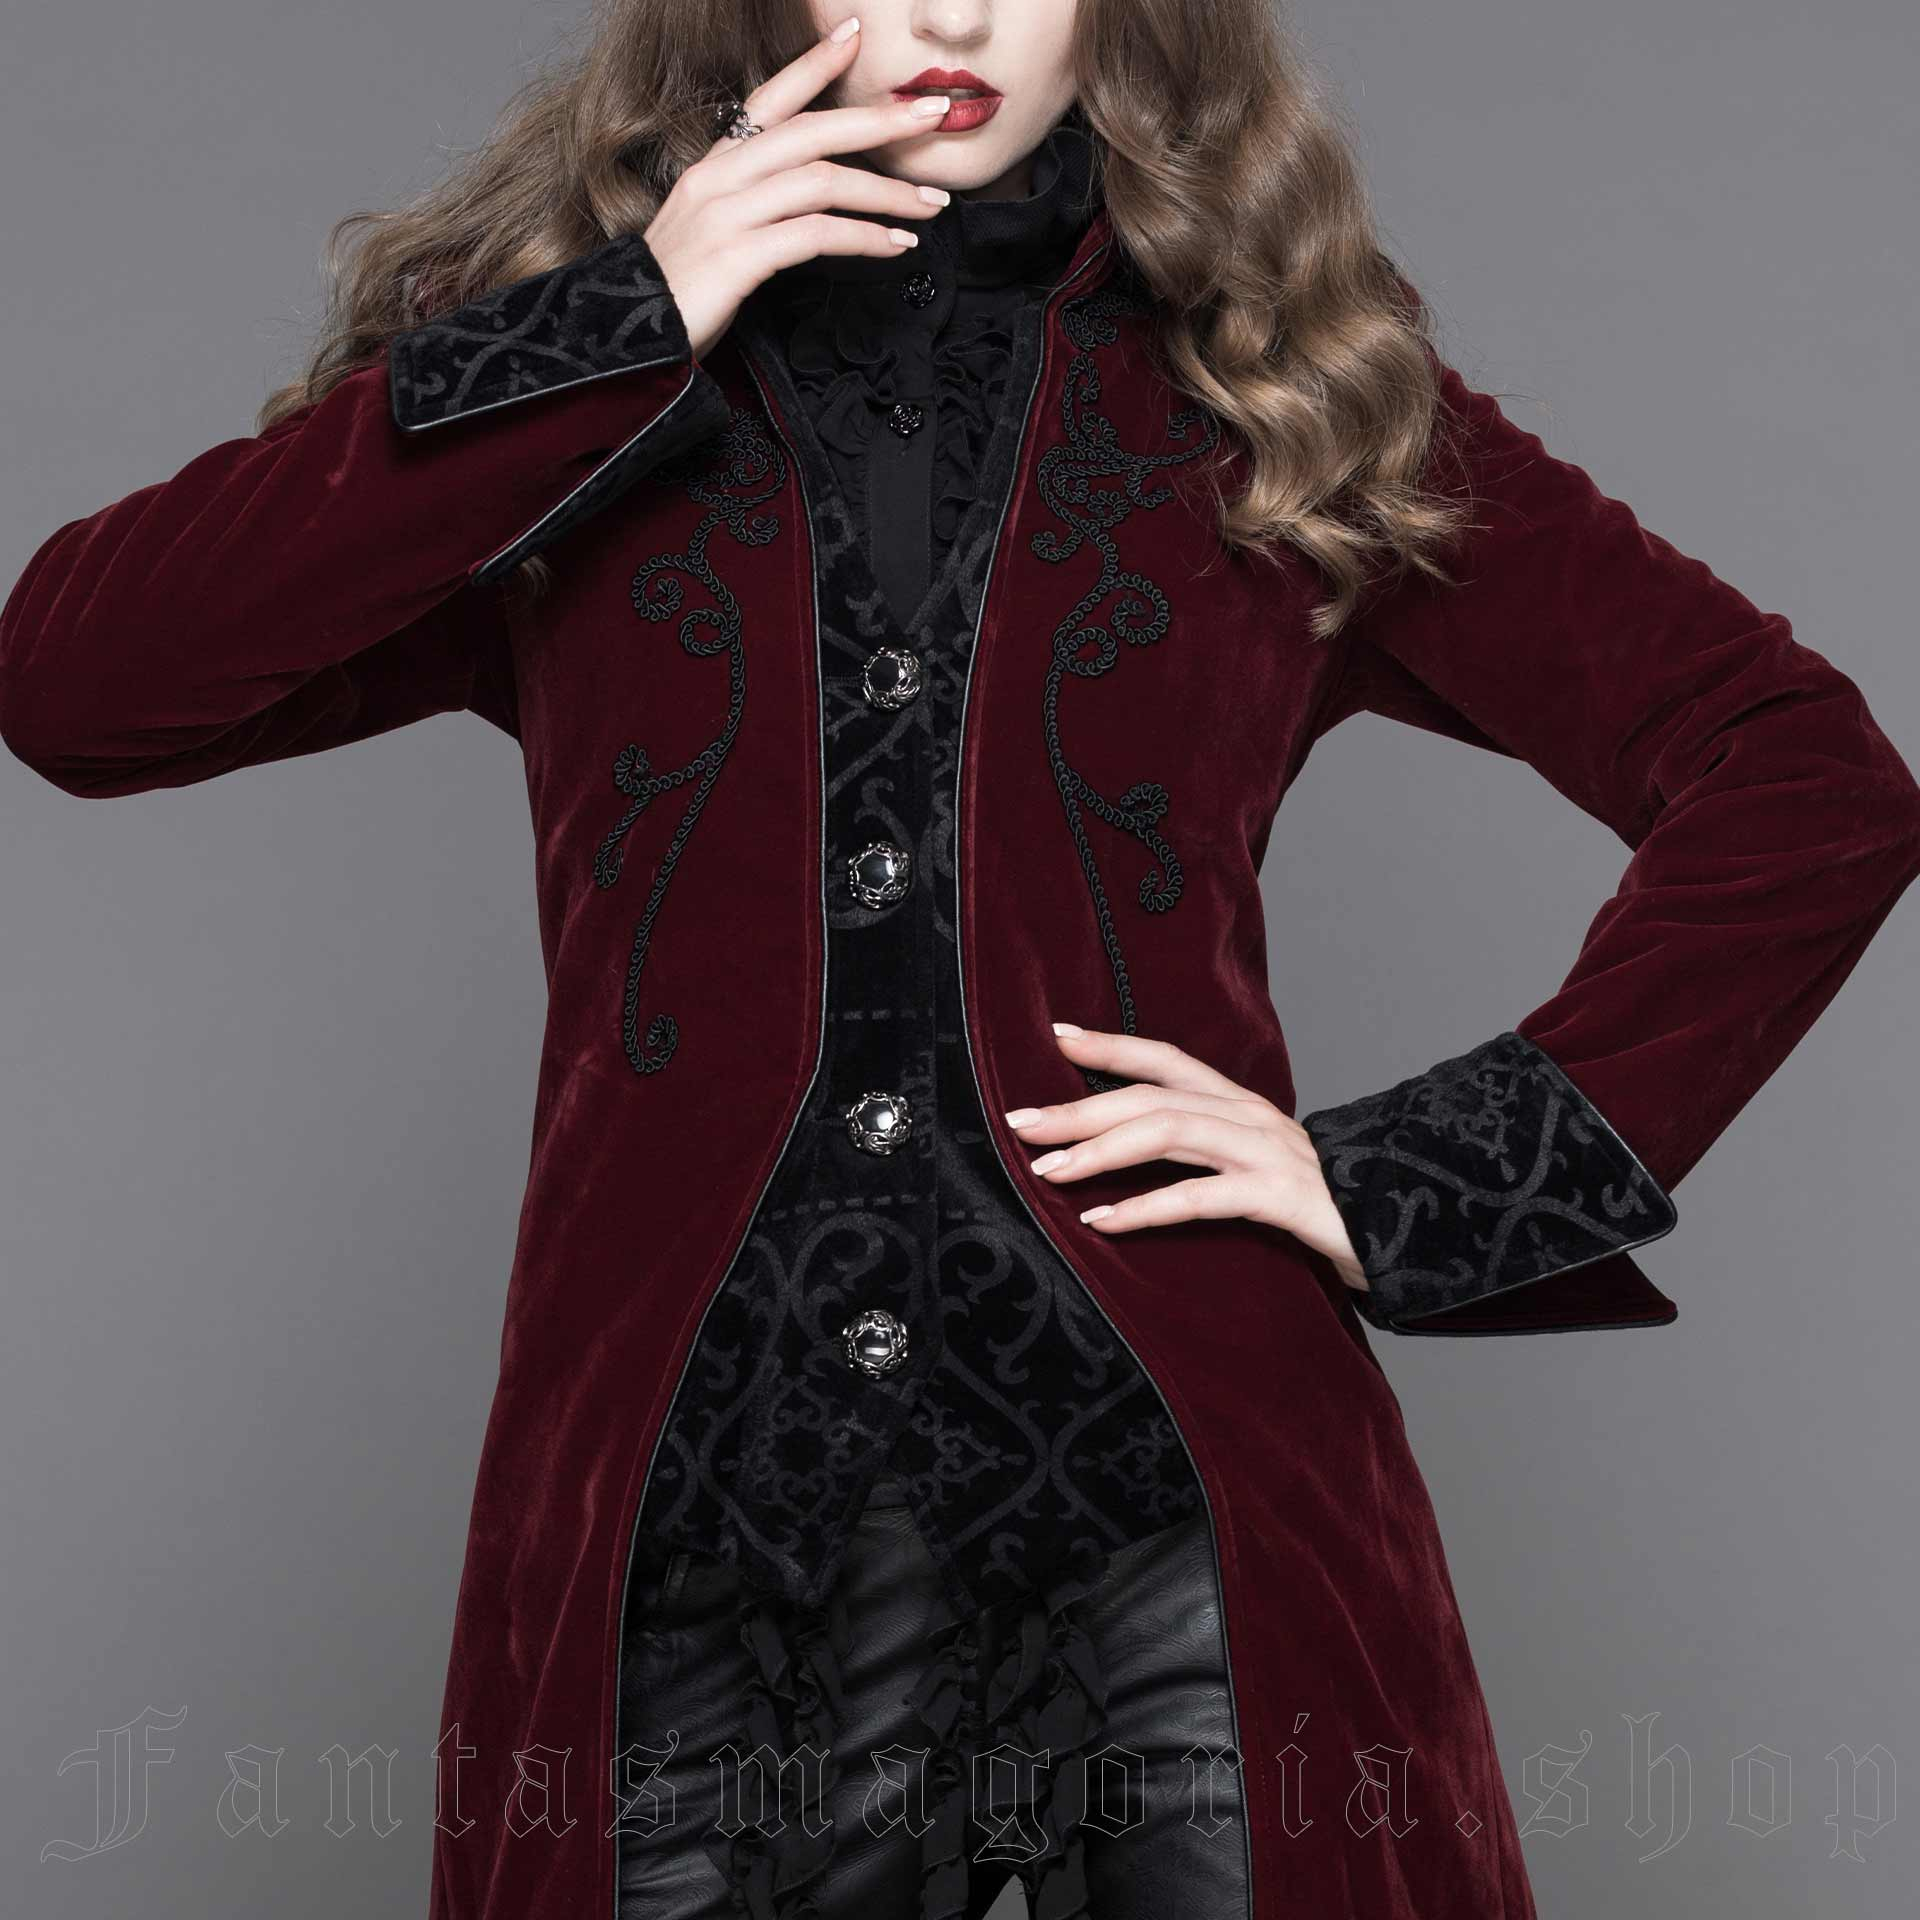 Devil Fashion Black Gothic Dark Vampire Queen Style Jacket for